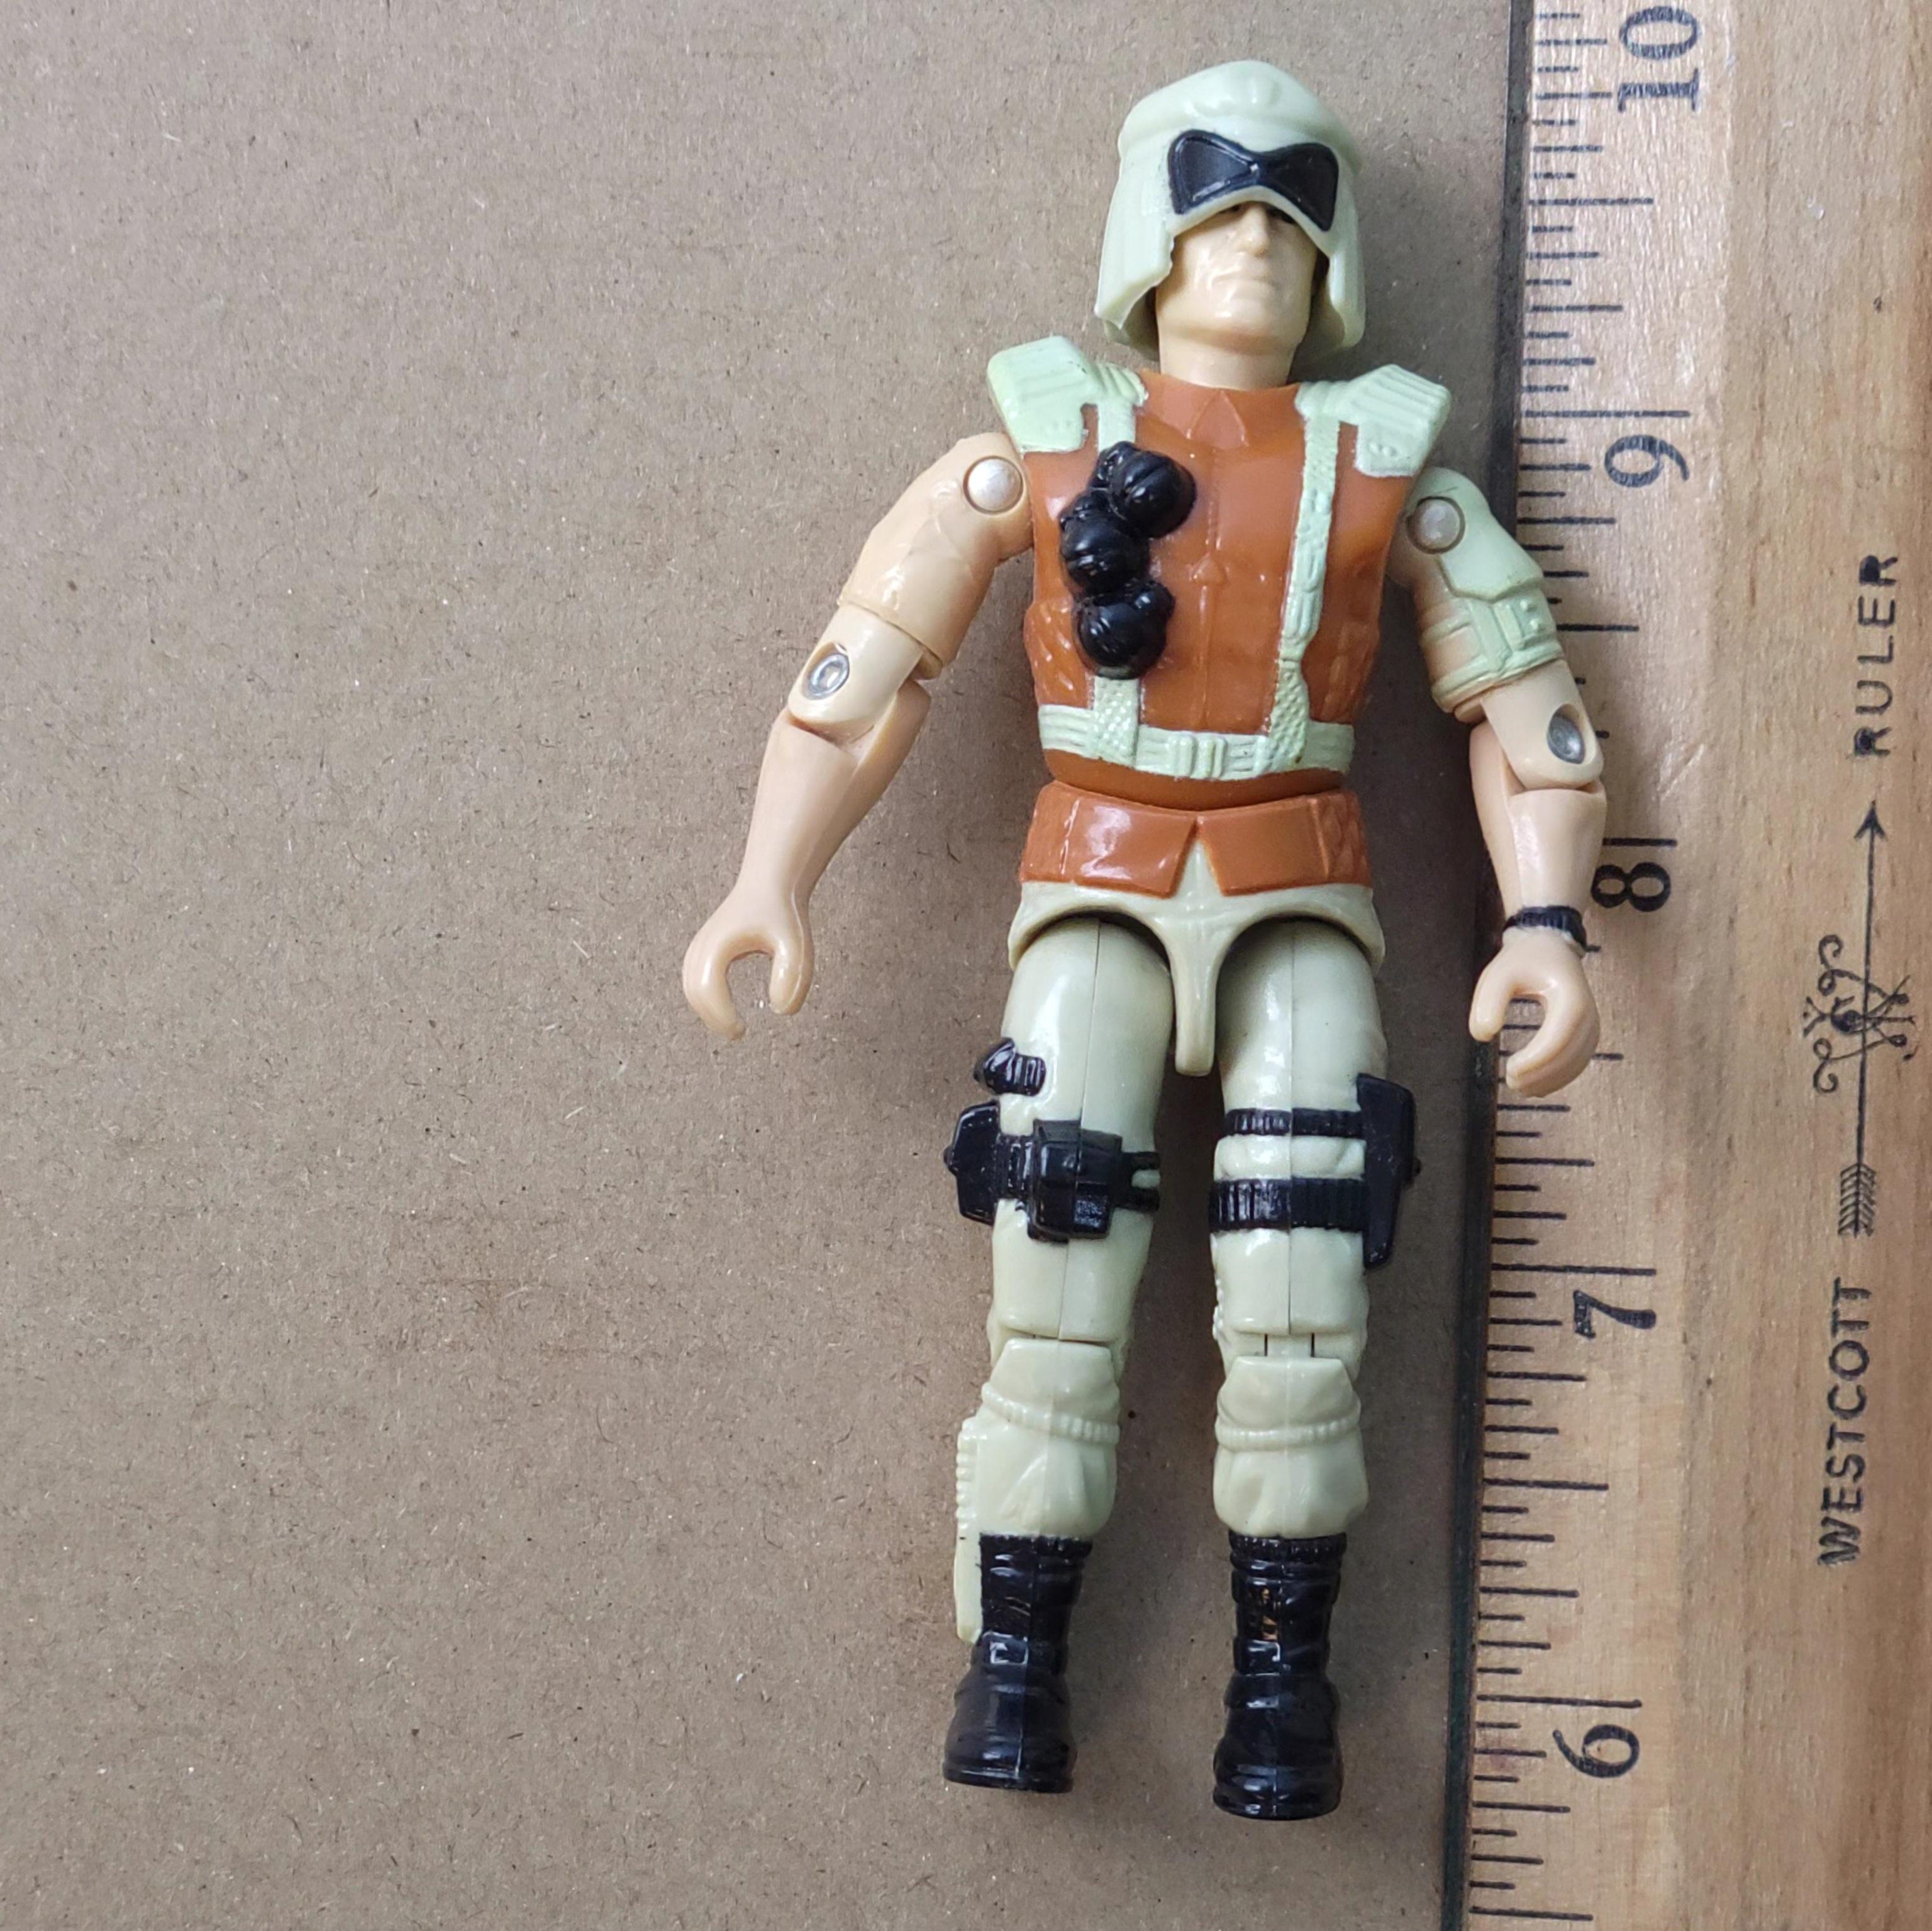 GI Joe Battle Corps Flint (v.4) 1994 Toy Action Figure